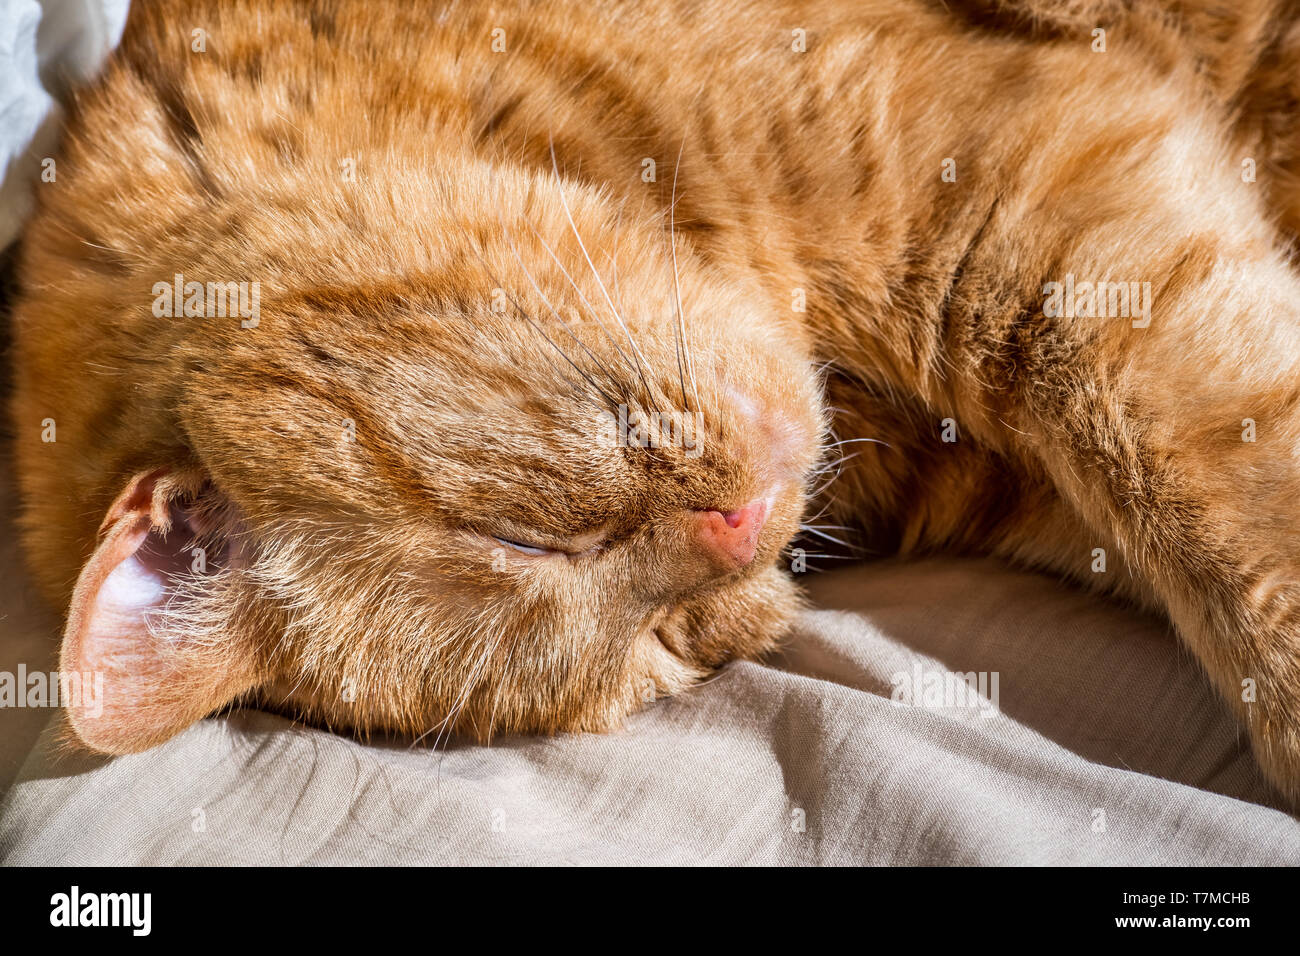 A proximité des grands, dormir, orange cat Banque D'Images